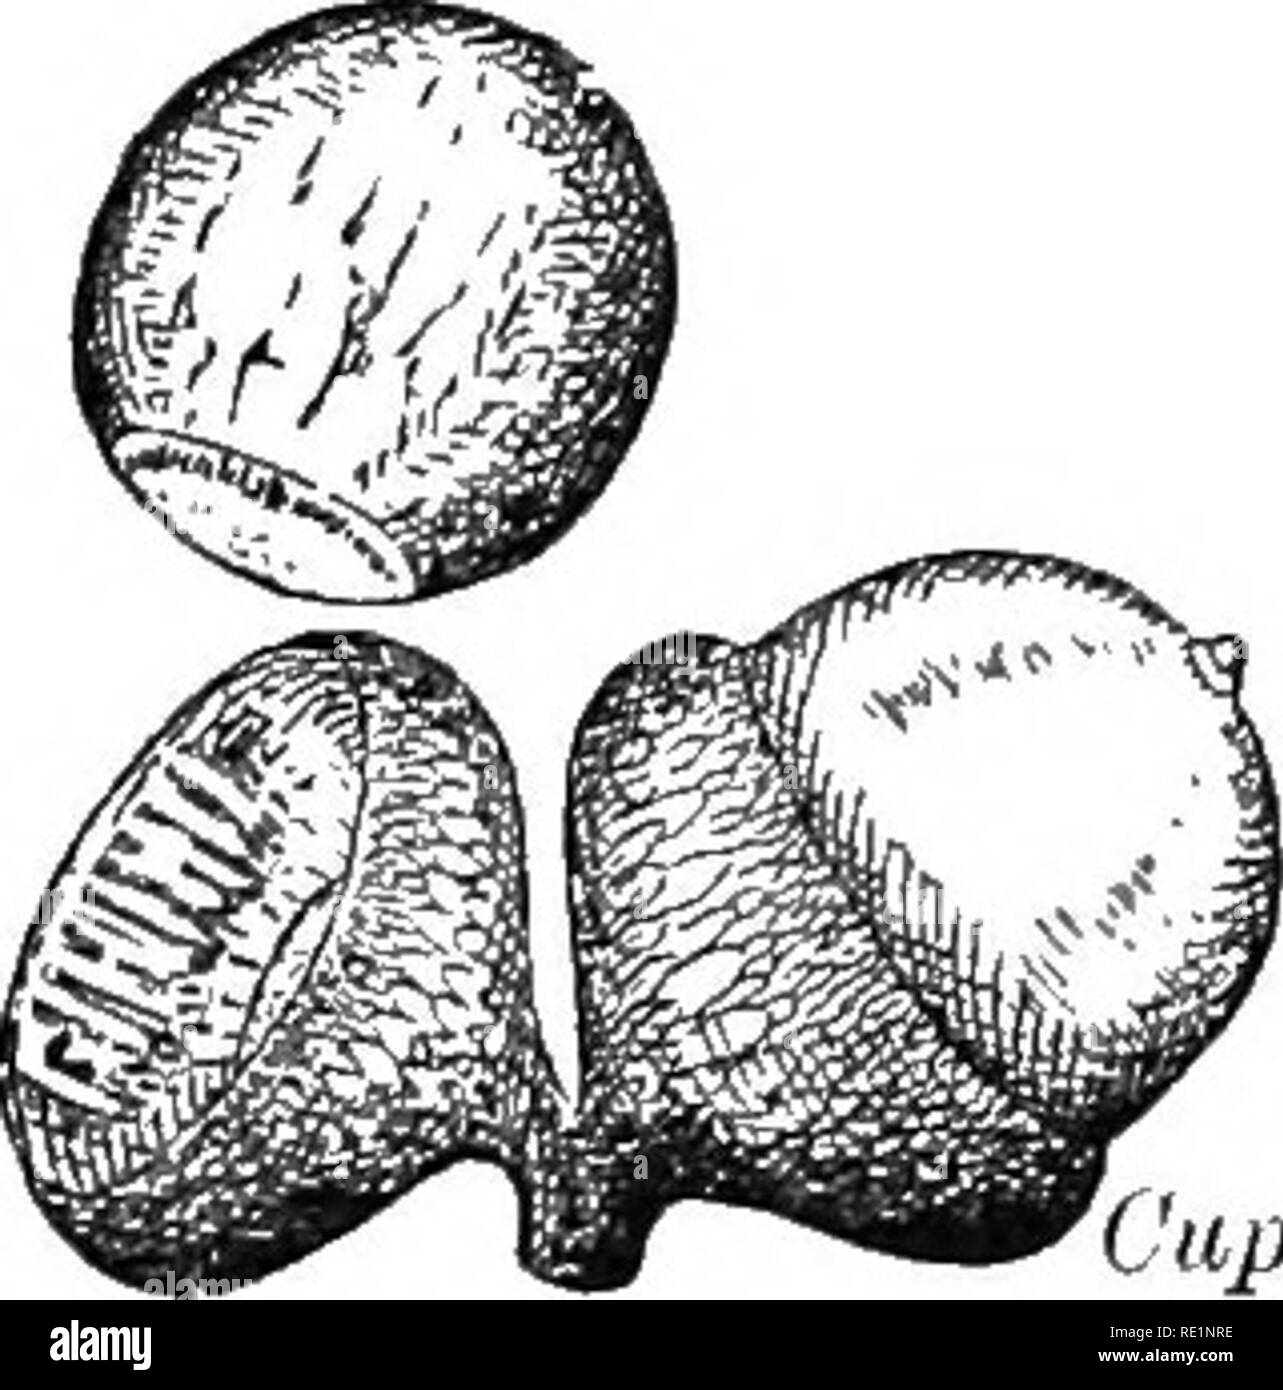 . Un libro de texto de botánica elemental. La botánica. TBE fruta. 59 silique (Fig. 89). Un muy corto al igual que la de los silique Shep- bolso de la manada, Pimienta-hierba, etc. se denomina silicle (Fig. 90). Un uno alado-seeded Frutos indehiscentes se llama Samara (Fig. 91). El fruto de los olmos, fresnos y Wafer-Ash son ejemplos; el de maple es un doble de Samara. En el girasol, Dan- Capule. Ctipule Fig. 91. Fig. 92. delion. Lechuga silvestre, anémonas, etc. El fruto es seco, mono- locular, uno-seeded y mucho se asemeja a una semilla en sí; ese fruto es llamado un akene. La tuerca, como la avellana, Bellota, Hickory, es l Foto de stock